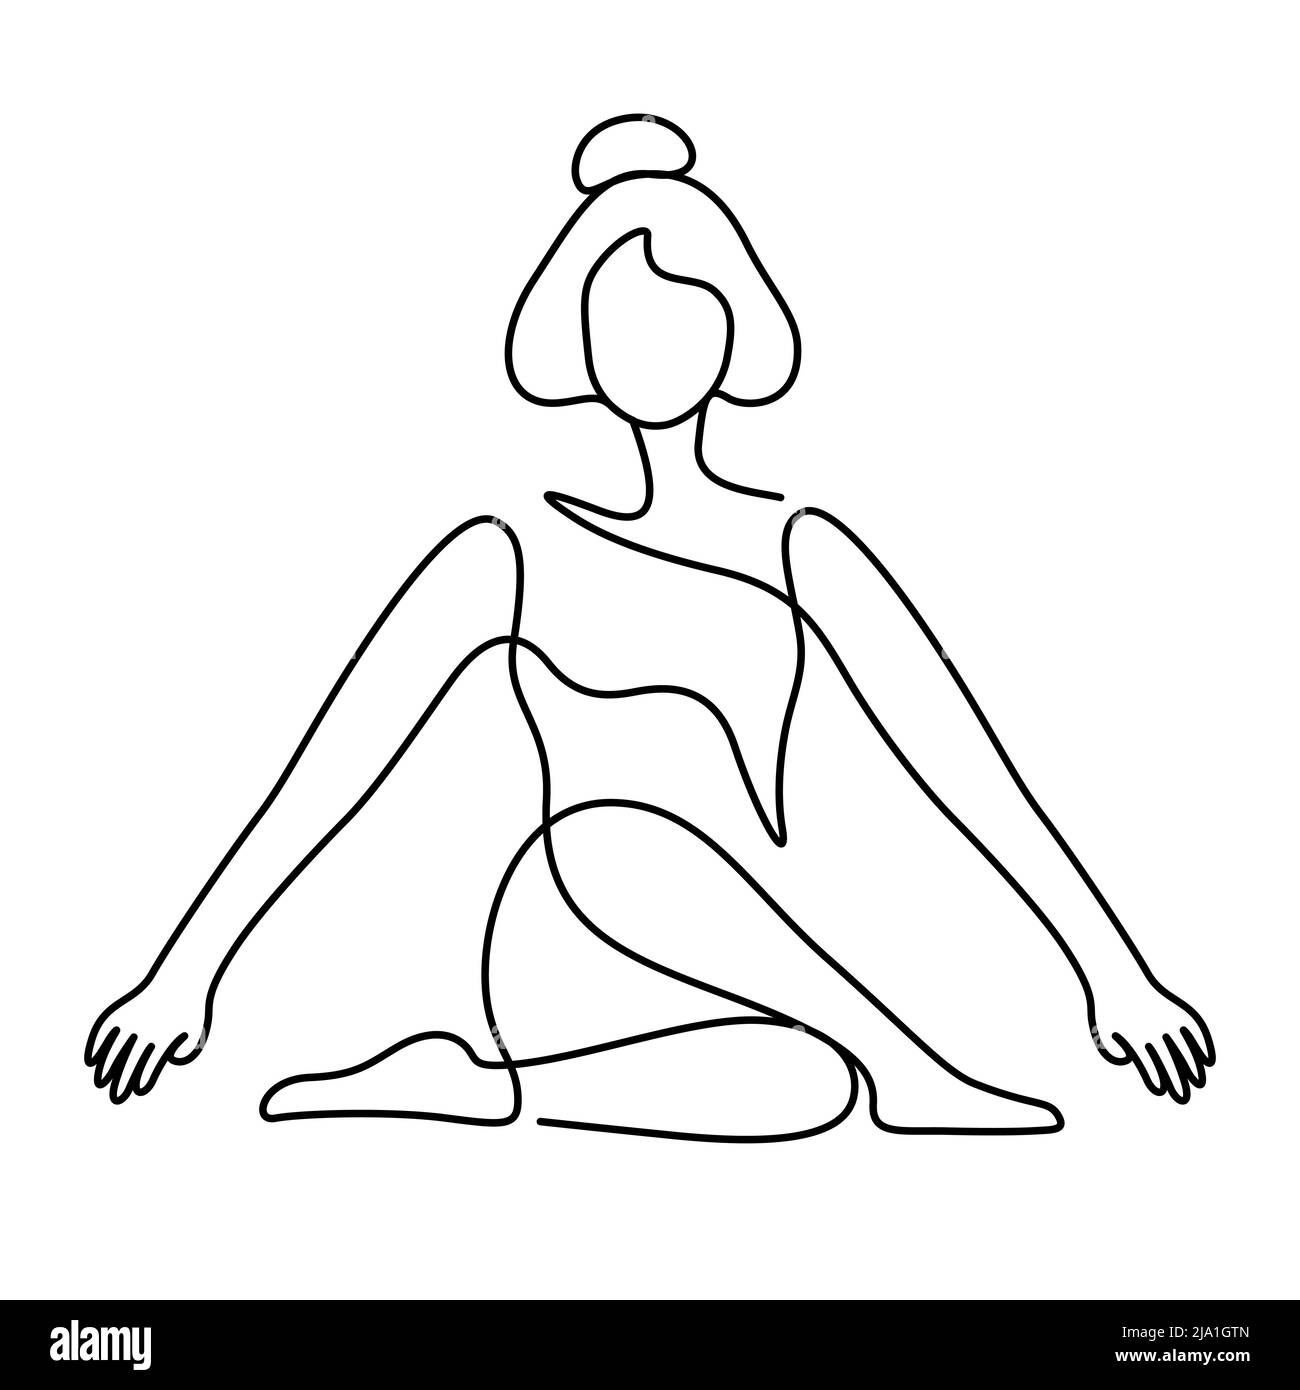 Frau in Yoga Pose Balance Vektor Illustration. Eine Linienzeichnung und durchgehender Stil auf weißem Hintergrund isoliert. Stock Vektor